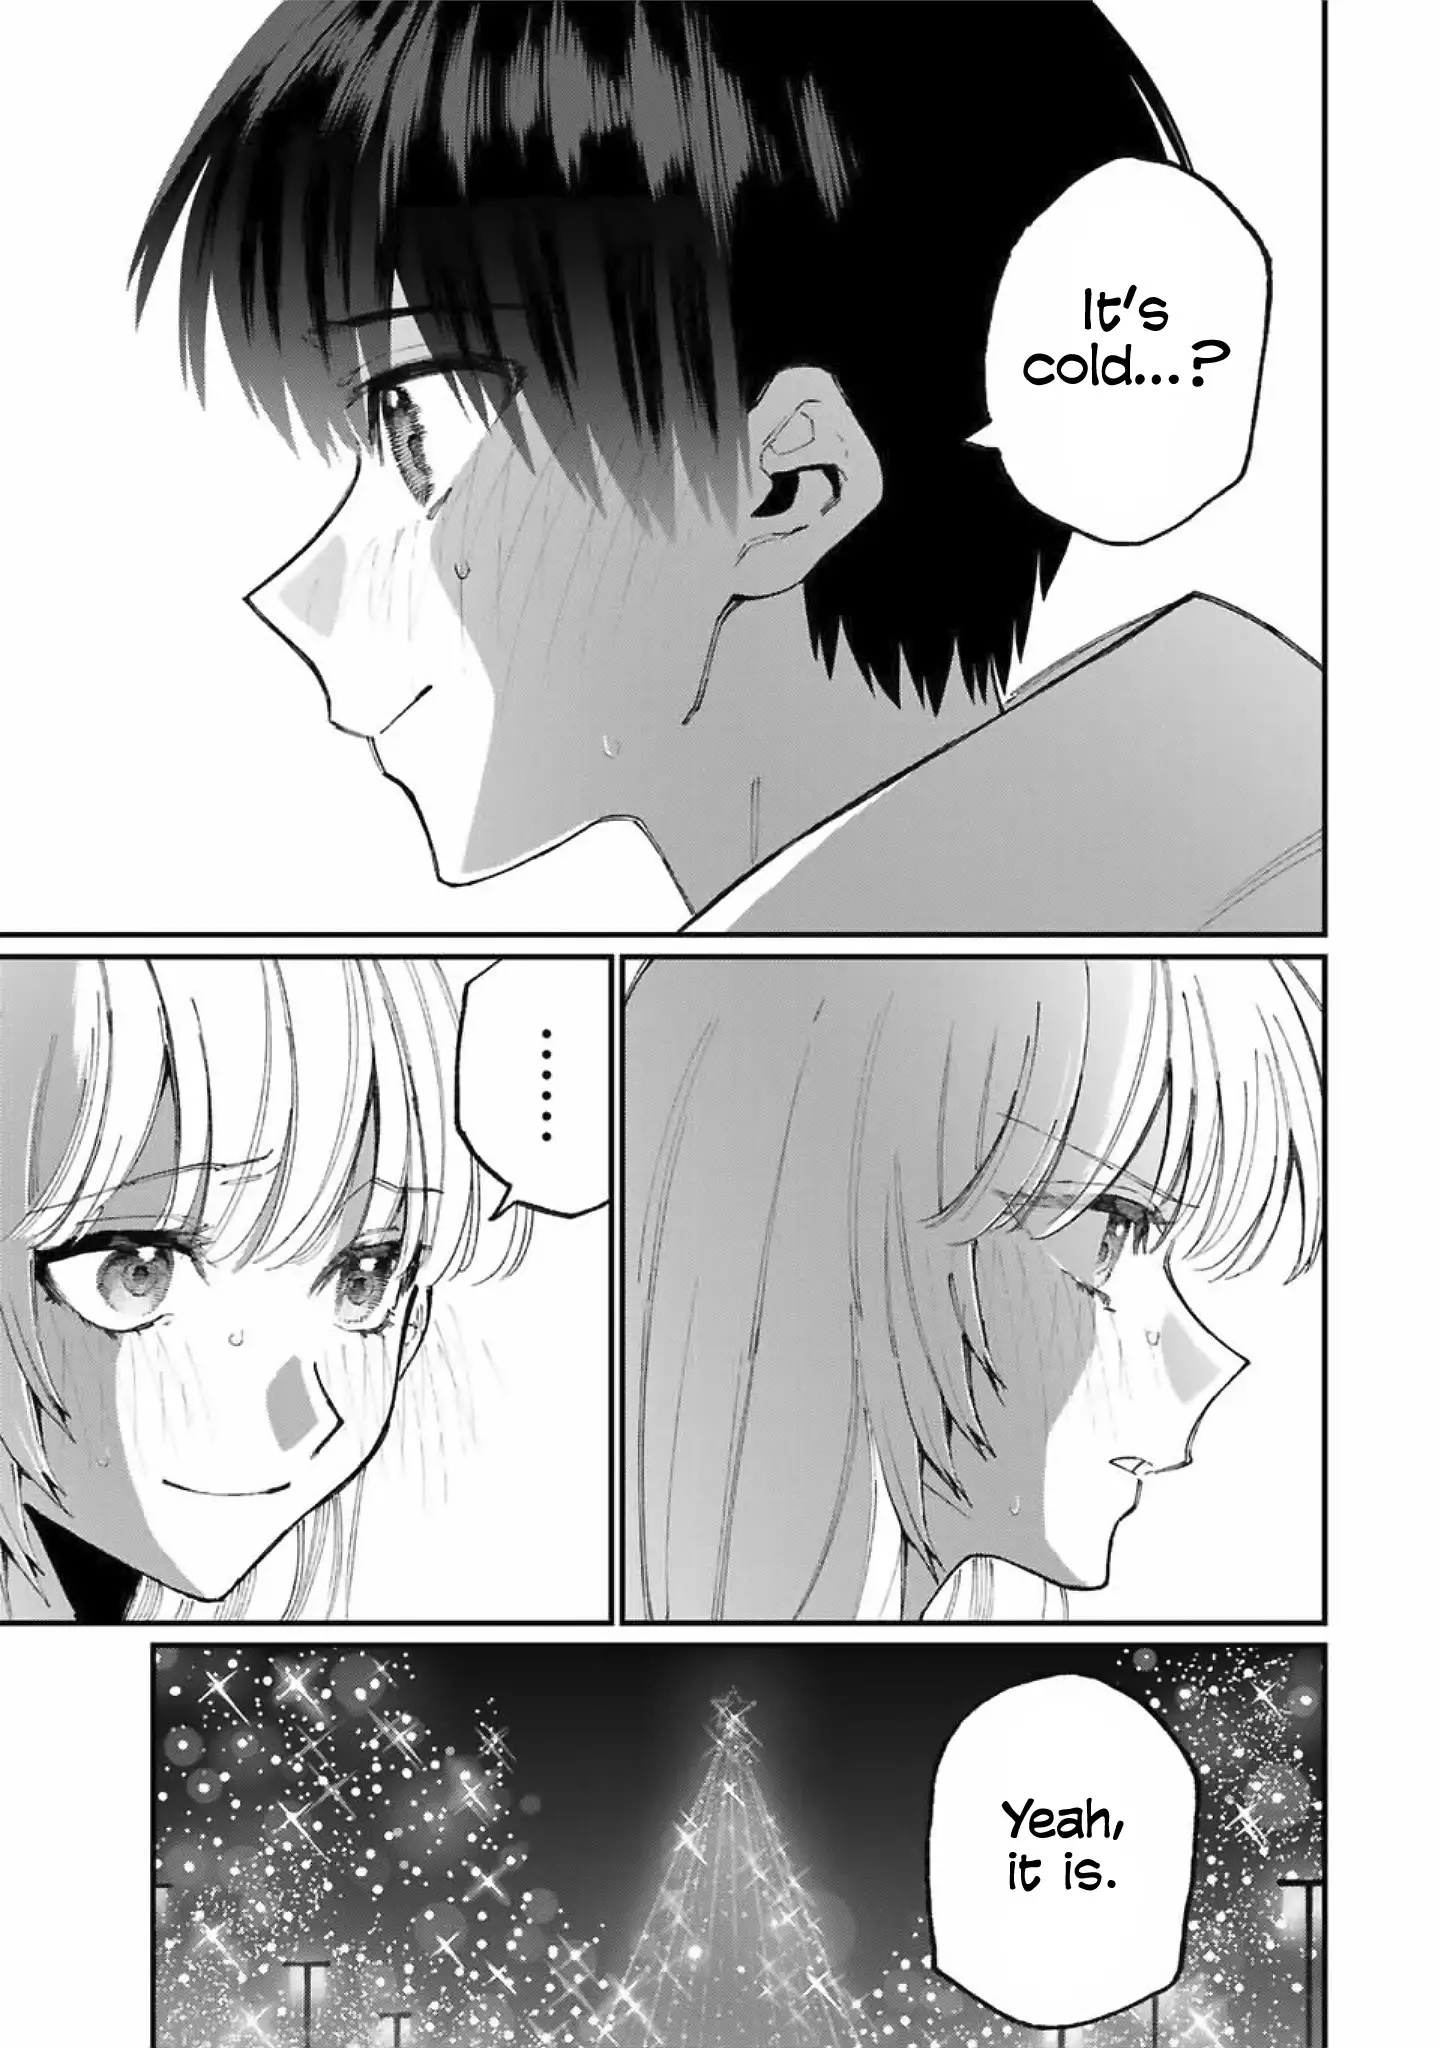 Shikimori's Not Just A Cutie - 74 page 7